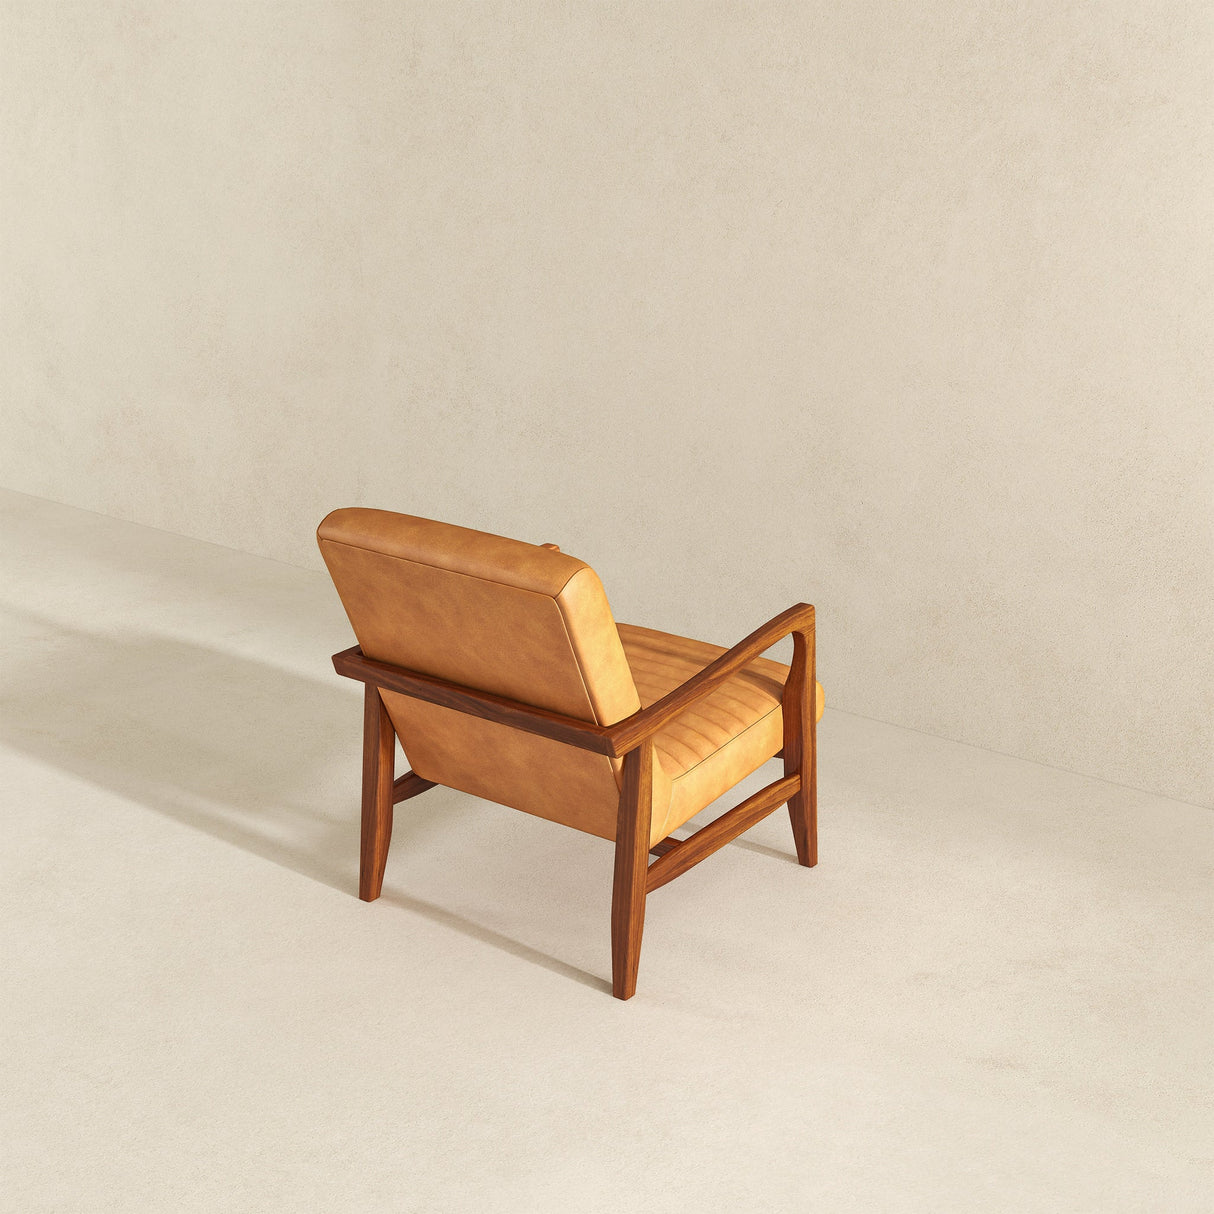 Micah Genuine Tan Leather Accent Chair - AFC00056 - Luna Furniture